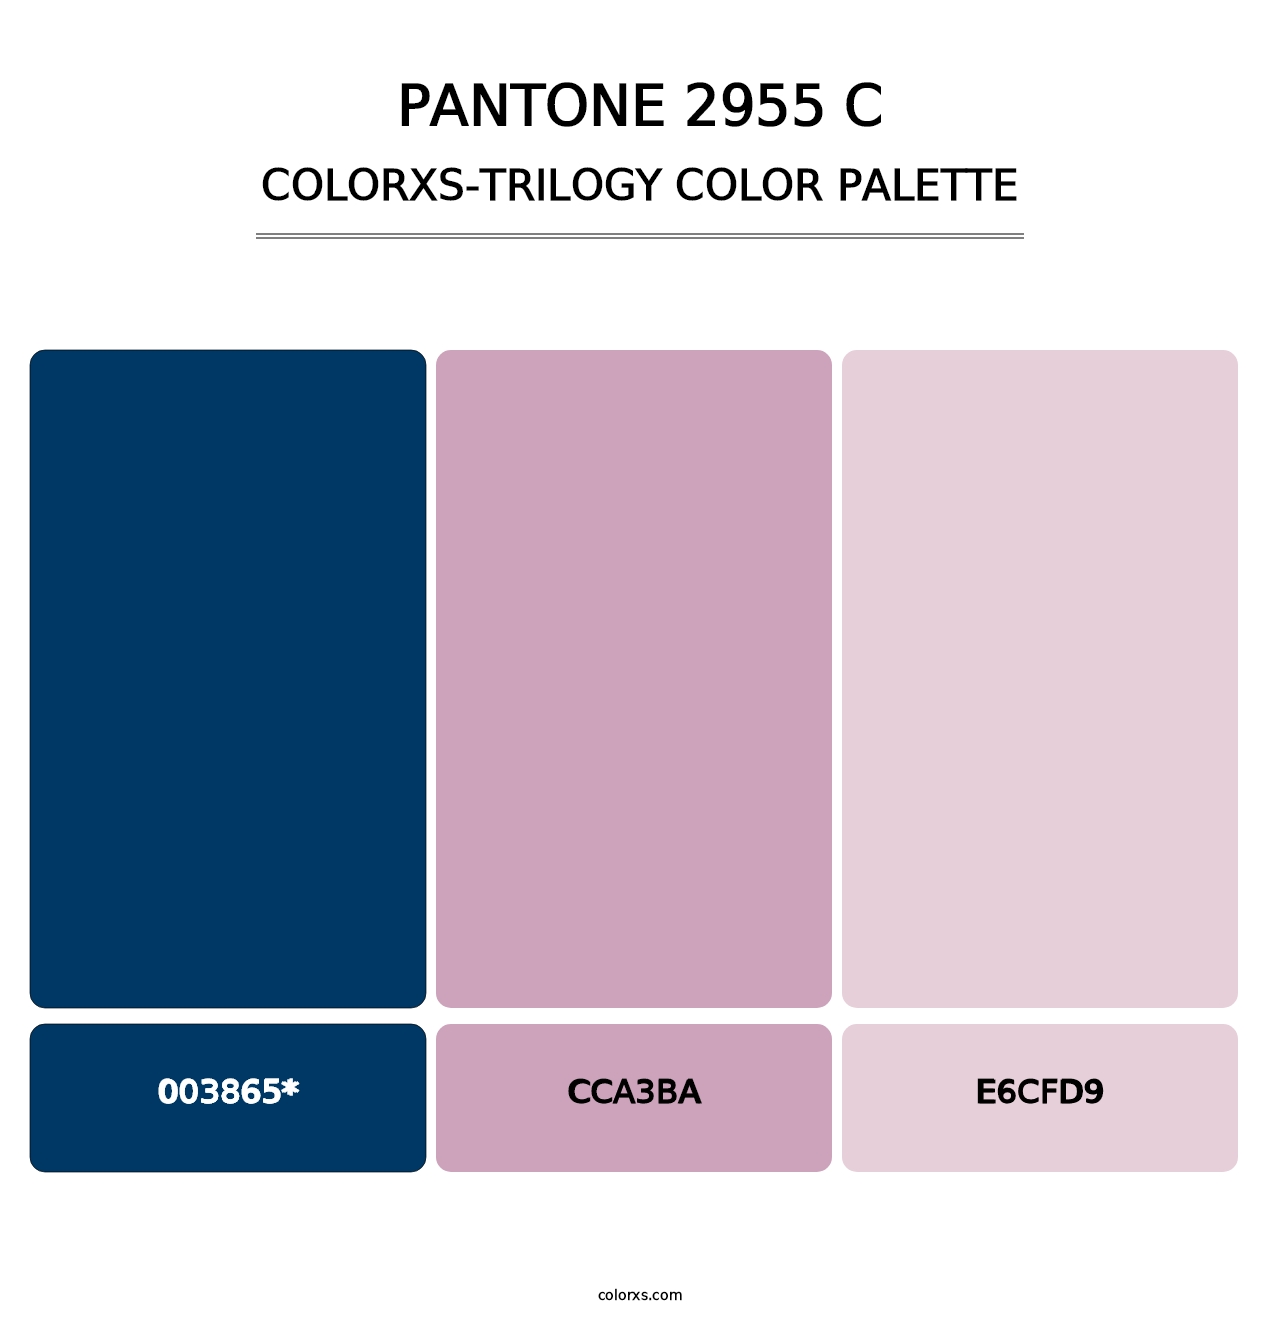 PANTONE 2955 C - Colorxs Trilogy Palette